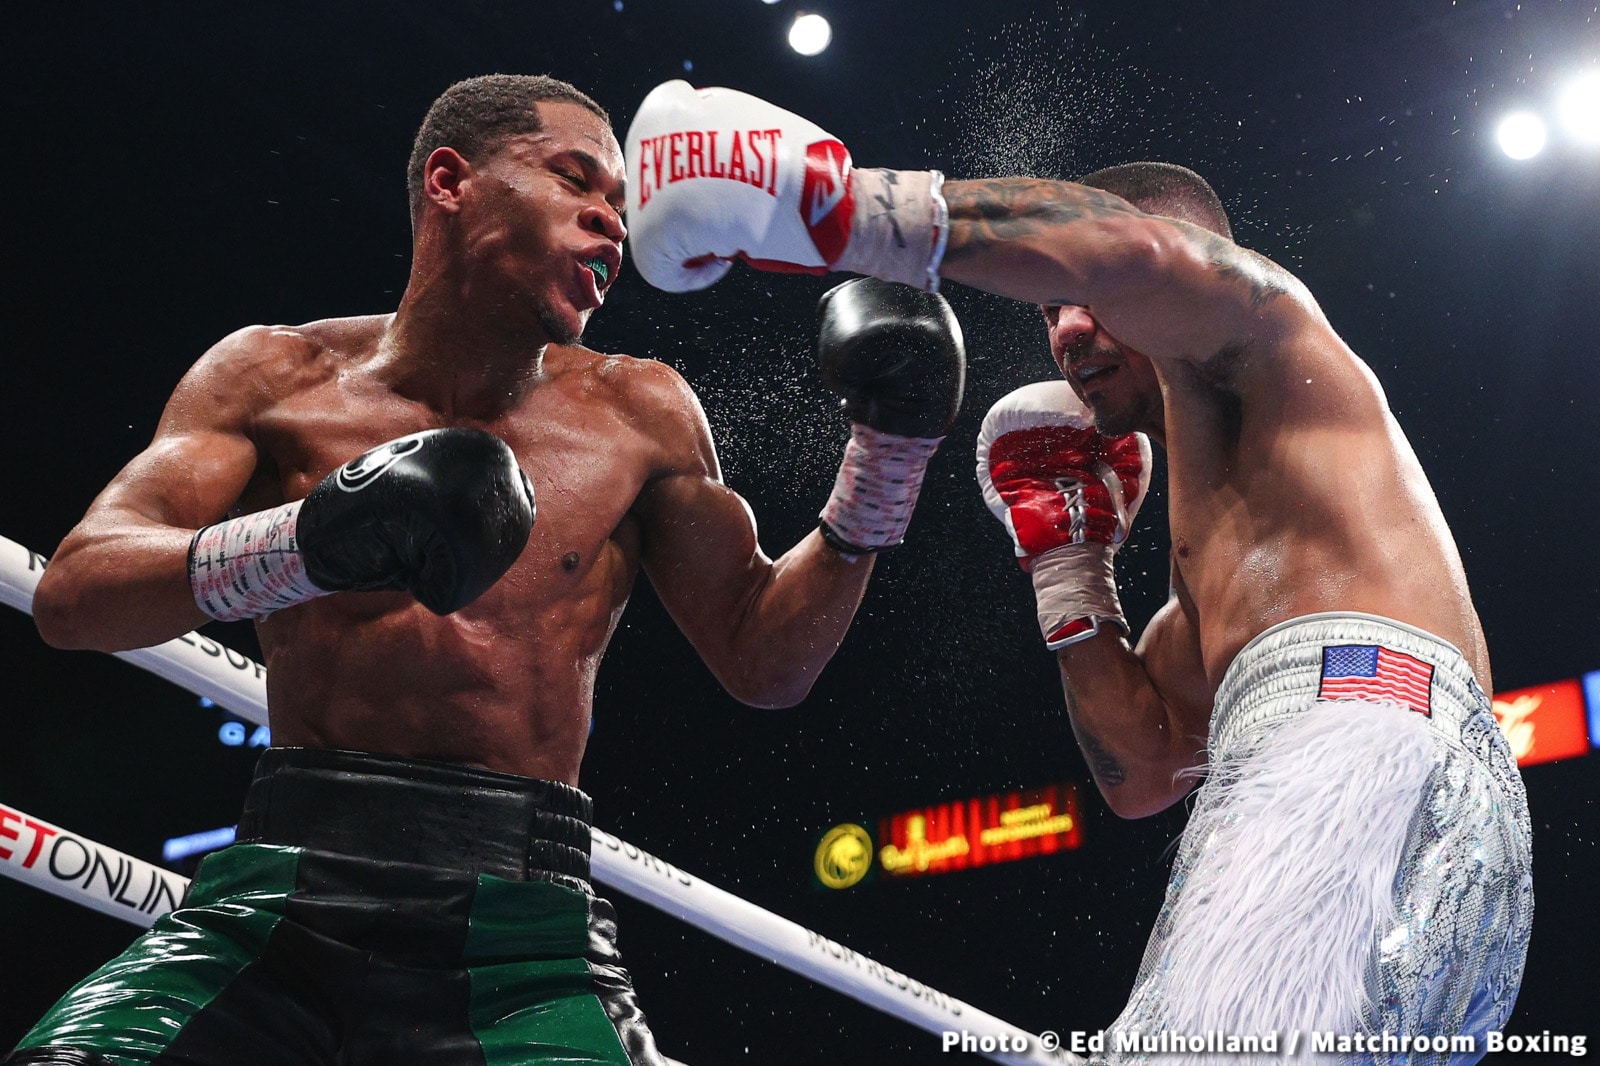 Joseph Diaz Jr boxing image / photo